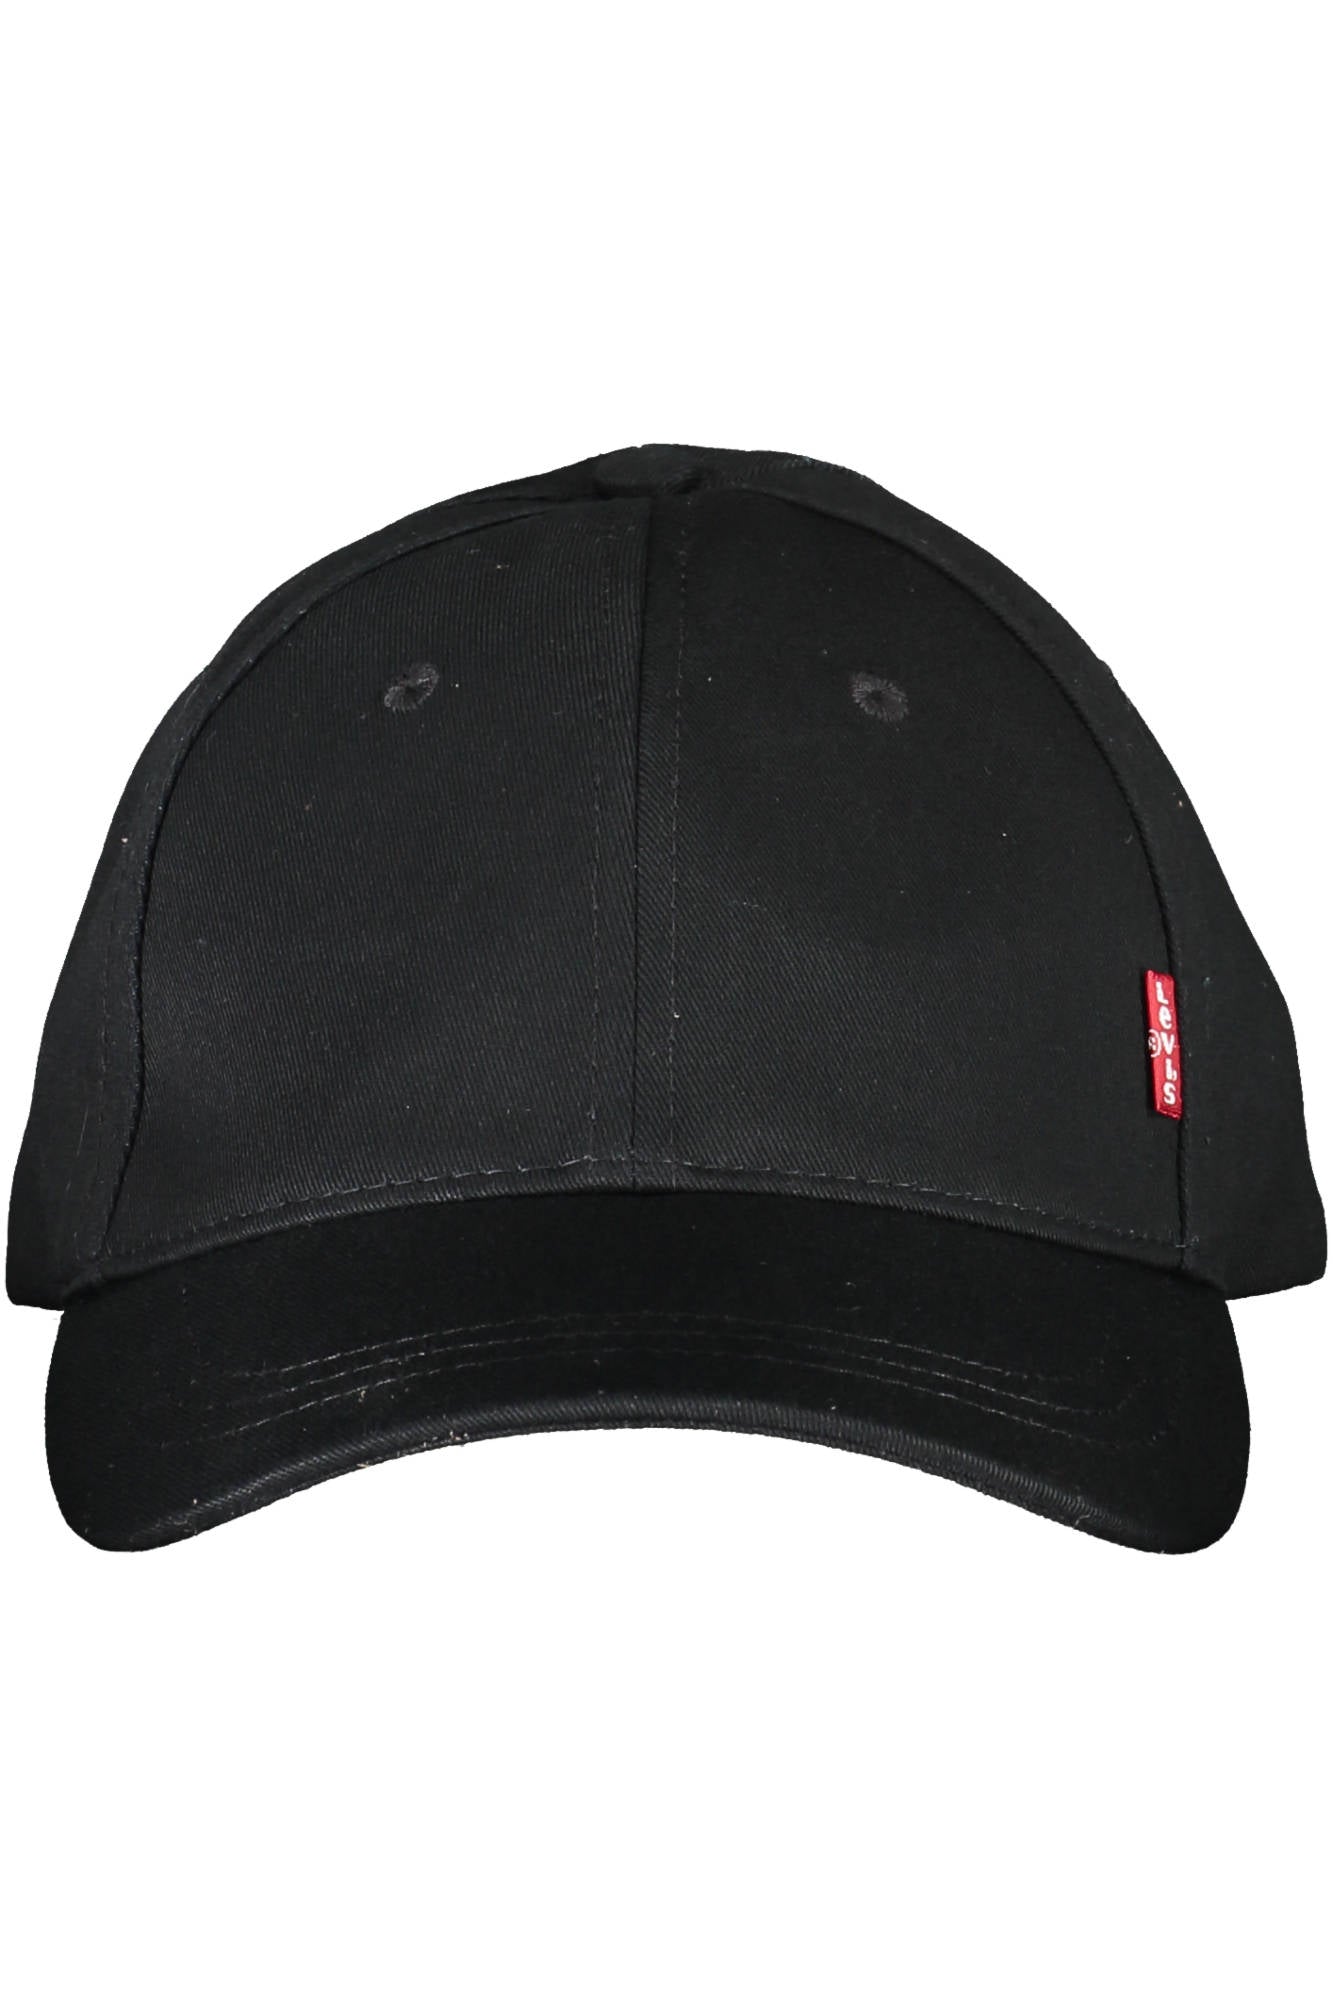 Levi's Black Hats & Cap - Fizigo